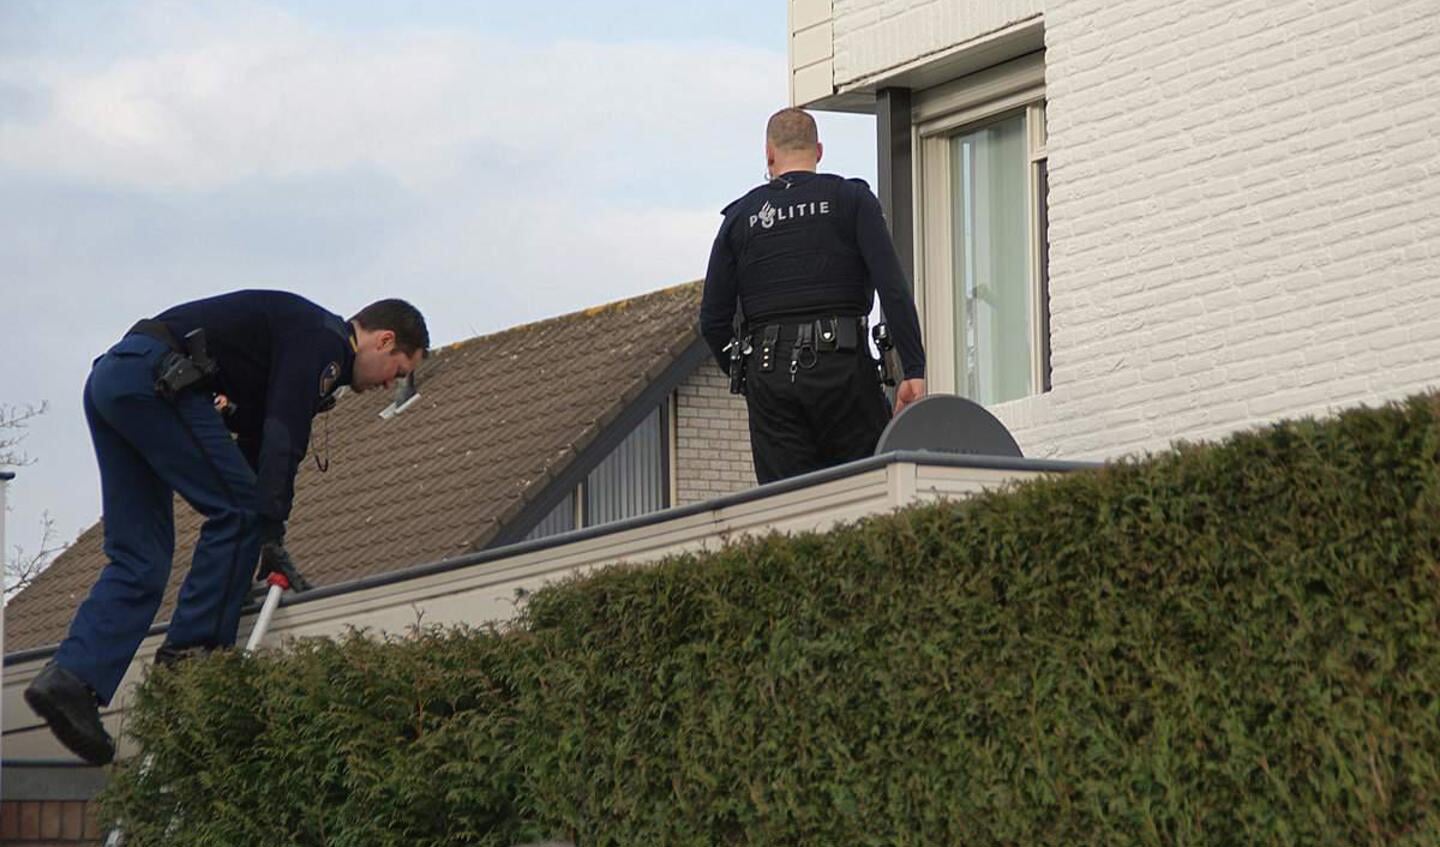 De politie arresteerde twee inbrekers na een tip van een buurtbewoner.  foto Theo Herrings